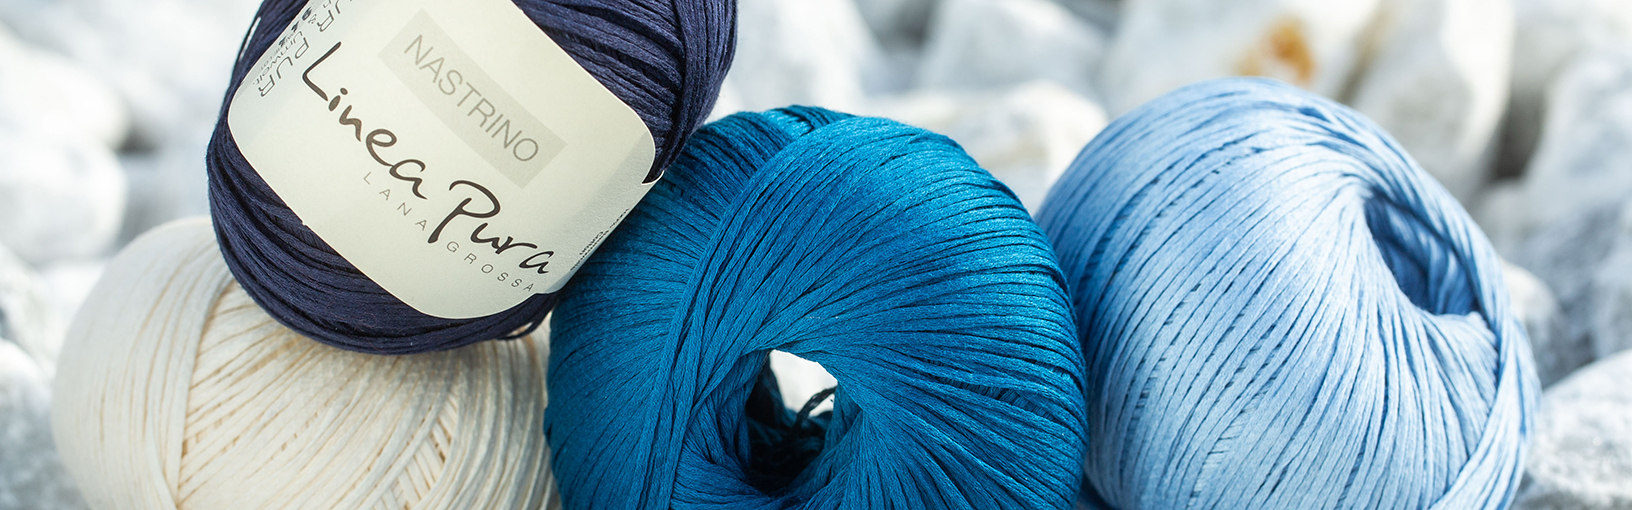 Hilos de alta calidad para tejer, crochet y fieltro Hilos Lana Grossa | Hilos calzetin | 8-ply (8 capas)